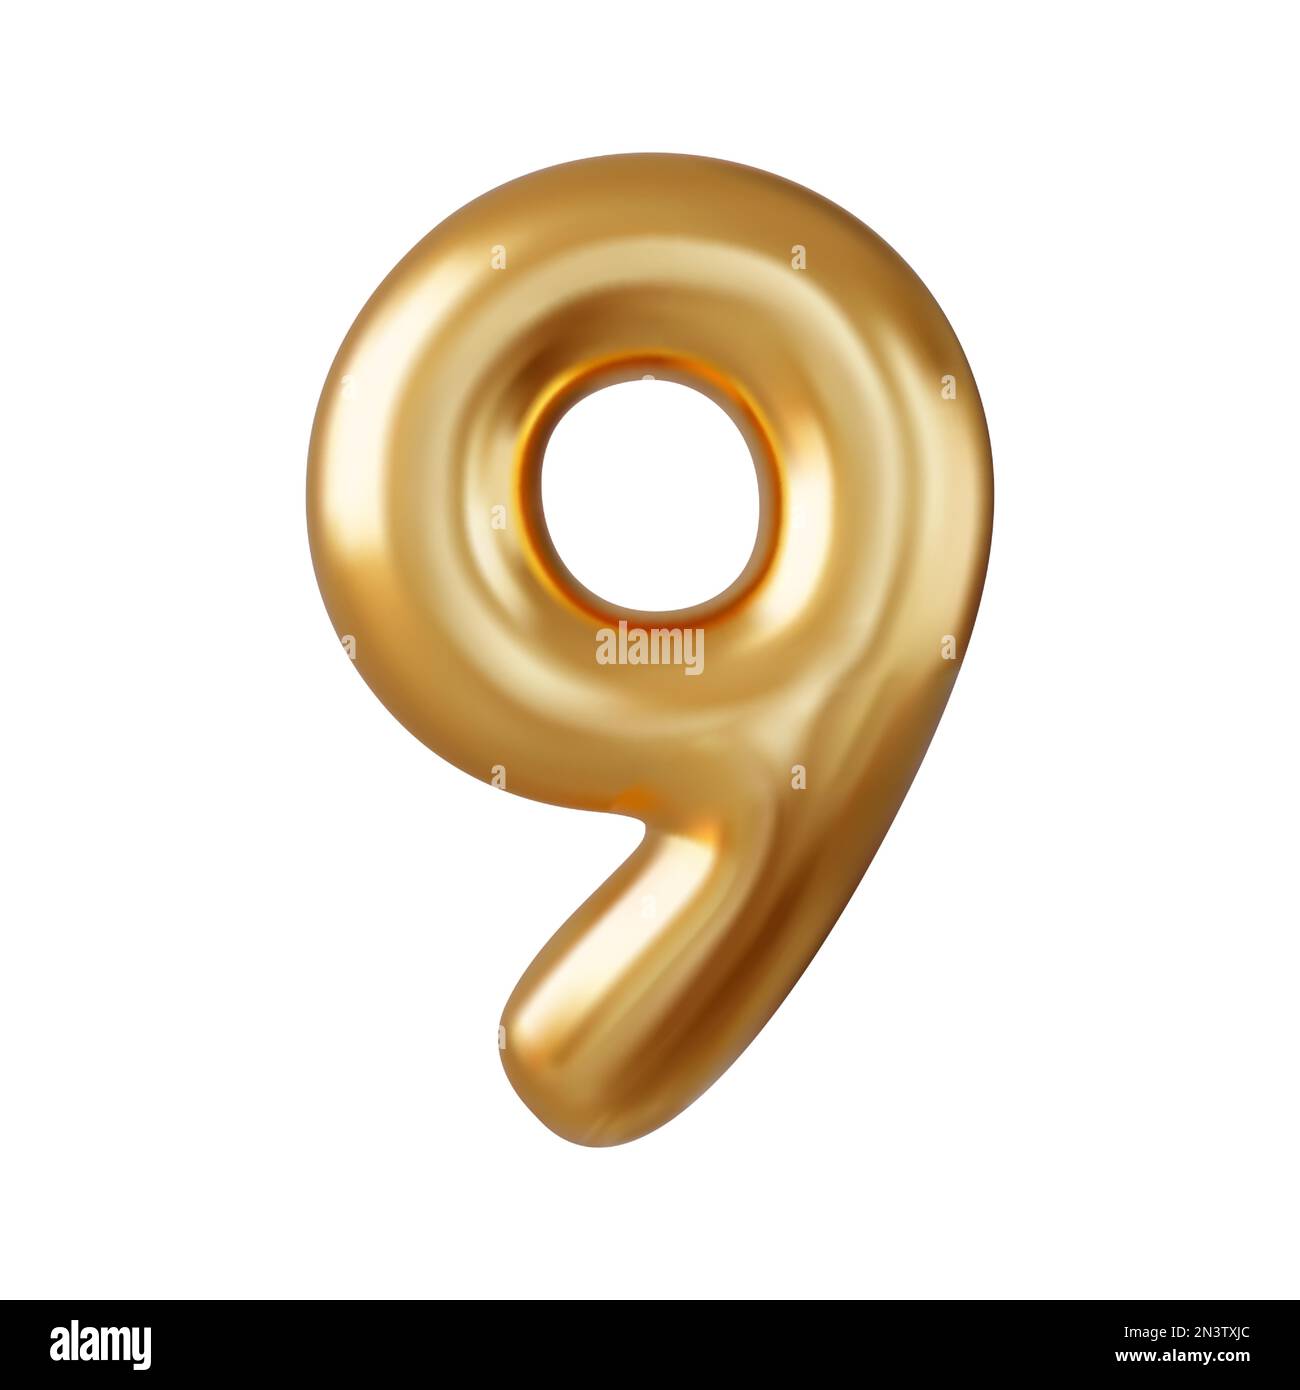 3d Number 9. nine Number sign gold color Stock Vector Image & Art ...